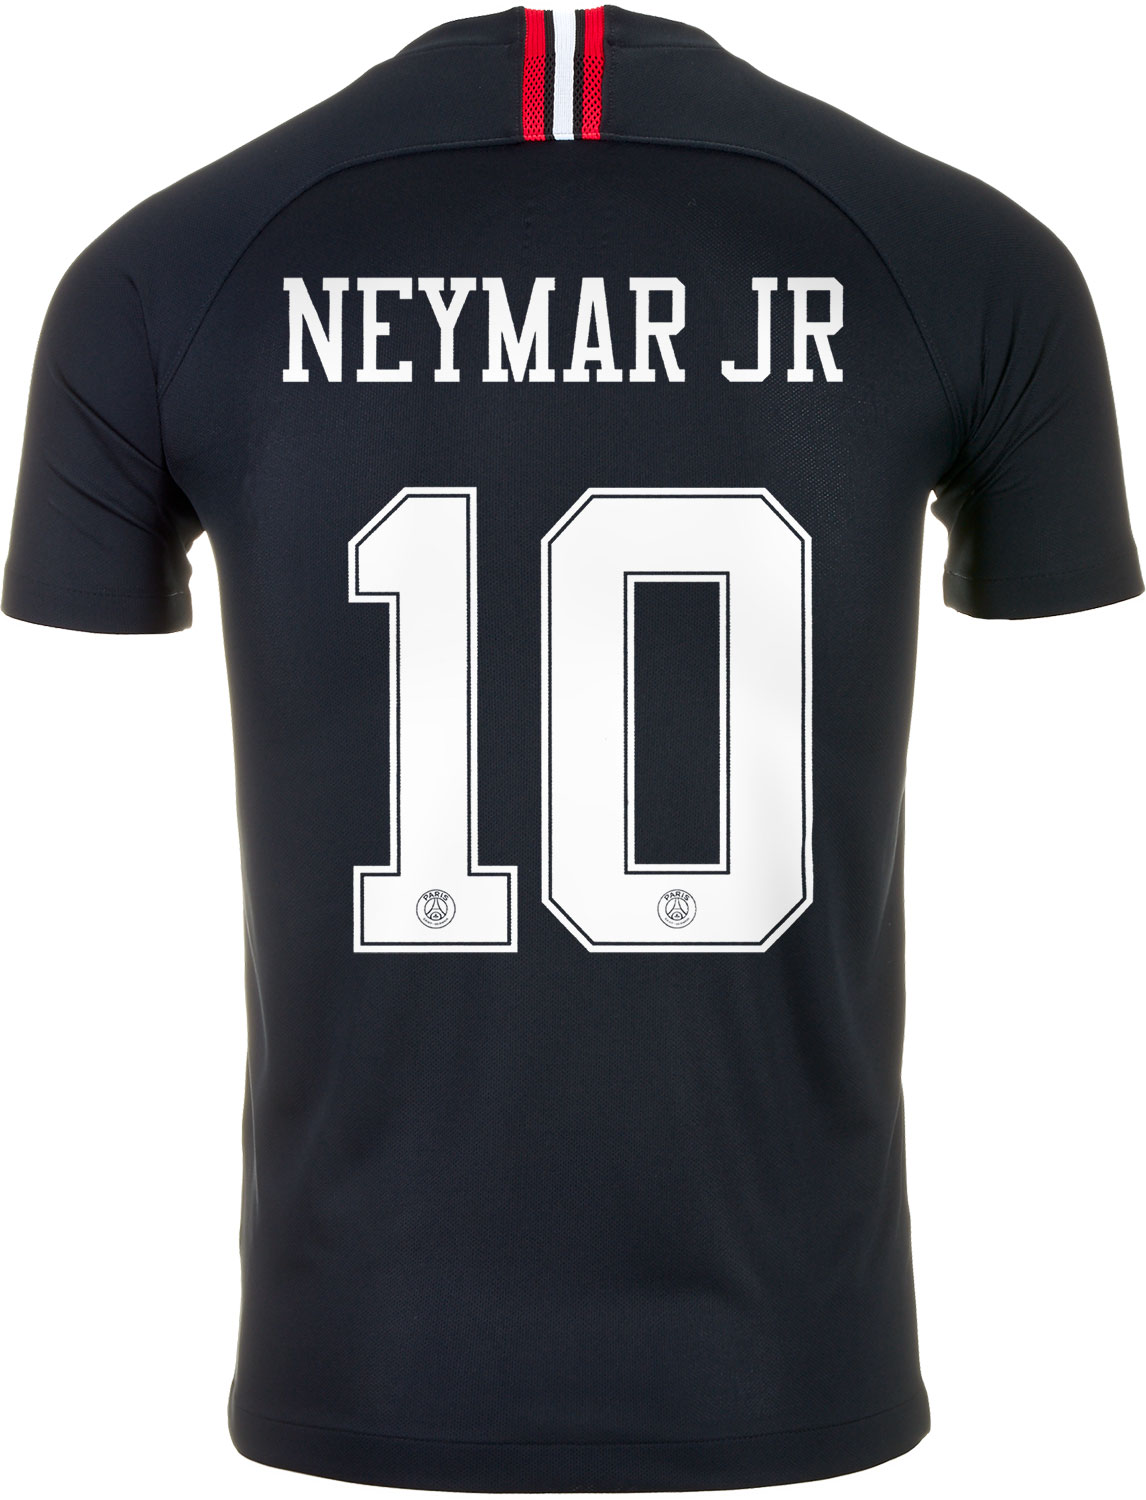 2018/19 Youth Nike Neymar Jr Psg 3rd Jersey  SoccerPro